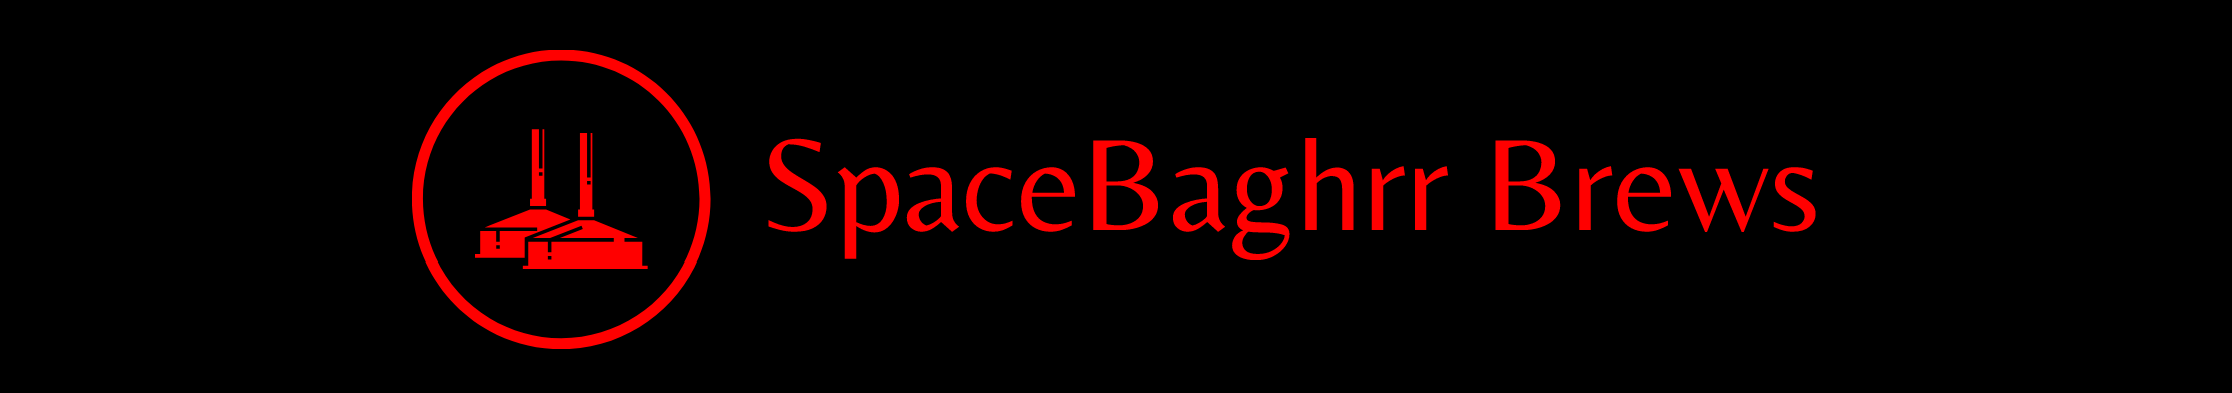 Spacebar Brews Logo